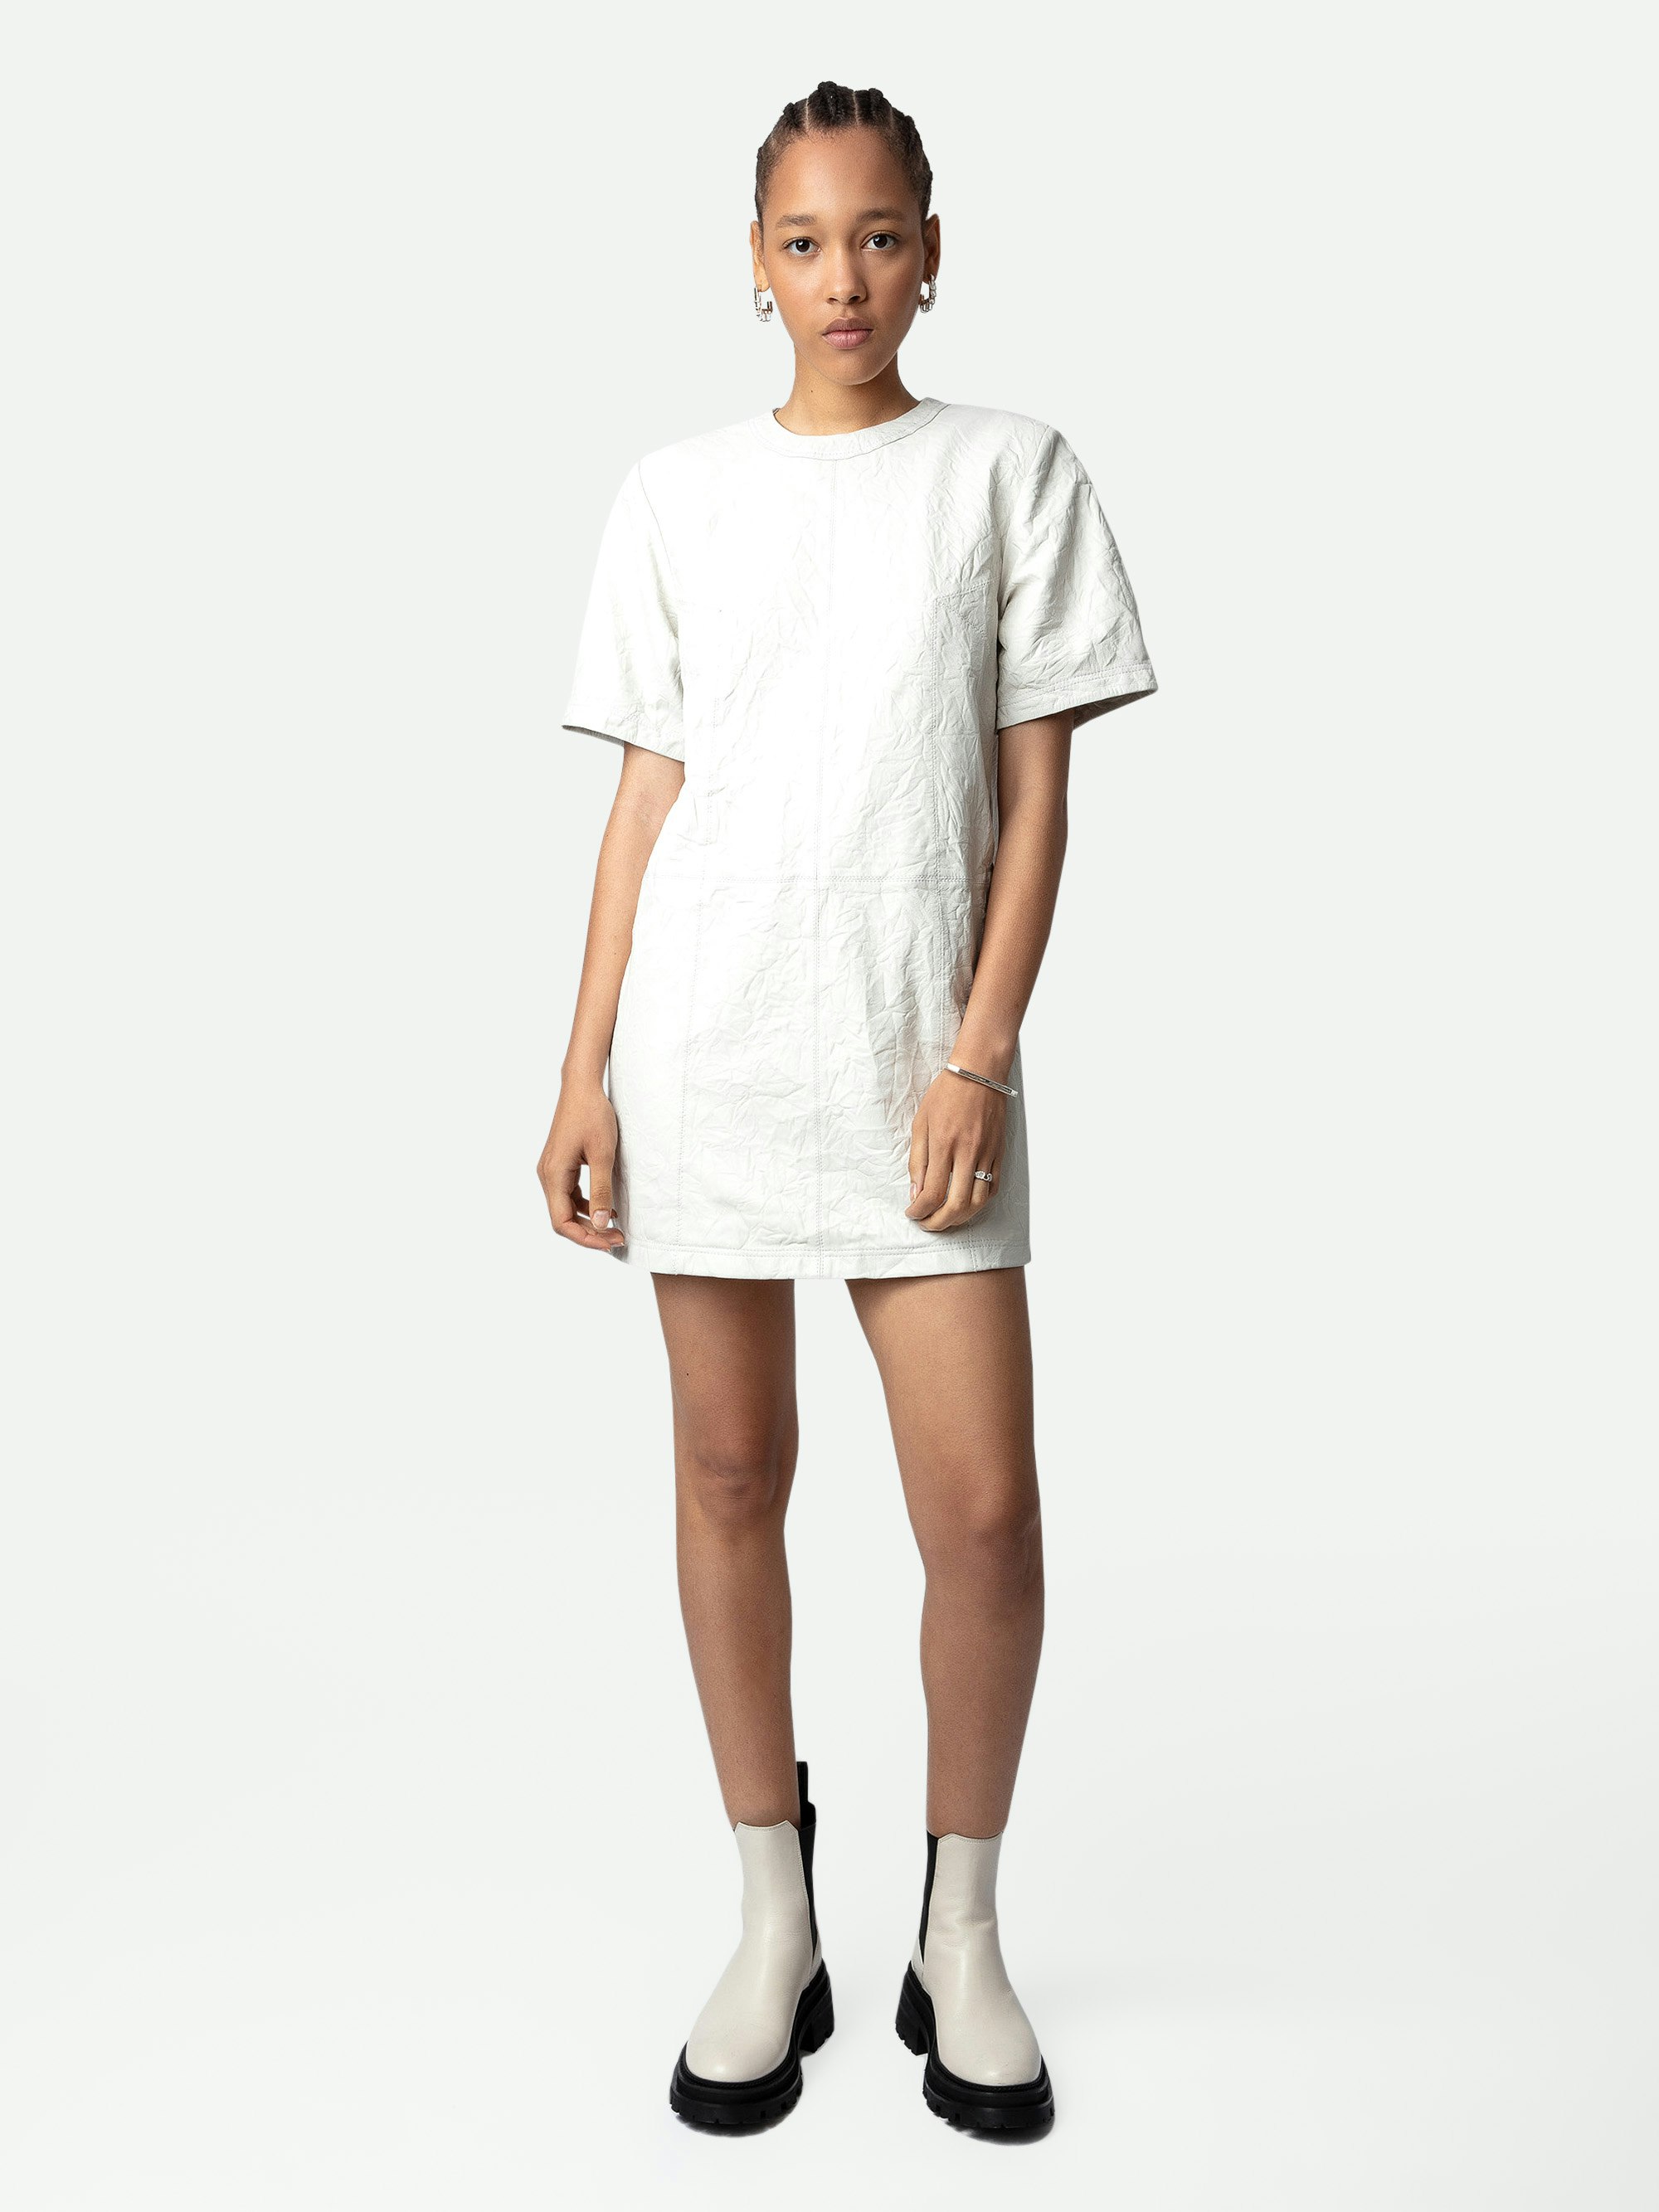 Kleid Riddy Knitterleder - Kurzes Kleid aus Knitterleder in Weiß und kurzen Ärmeln für Damen.